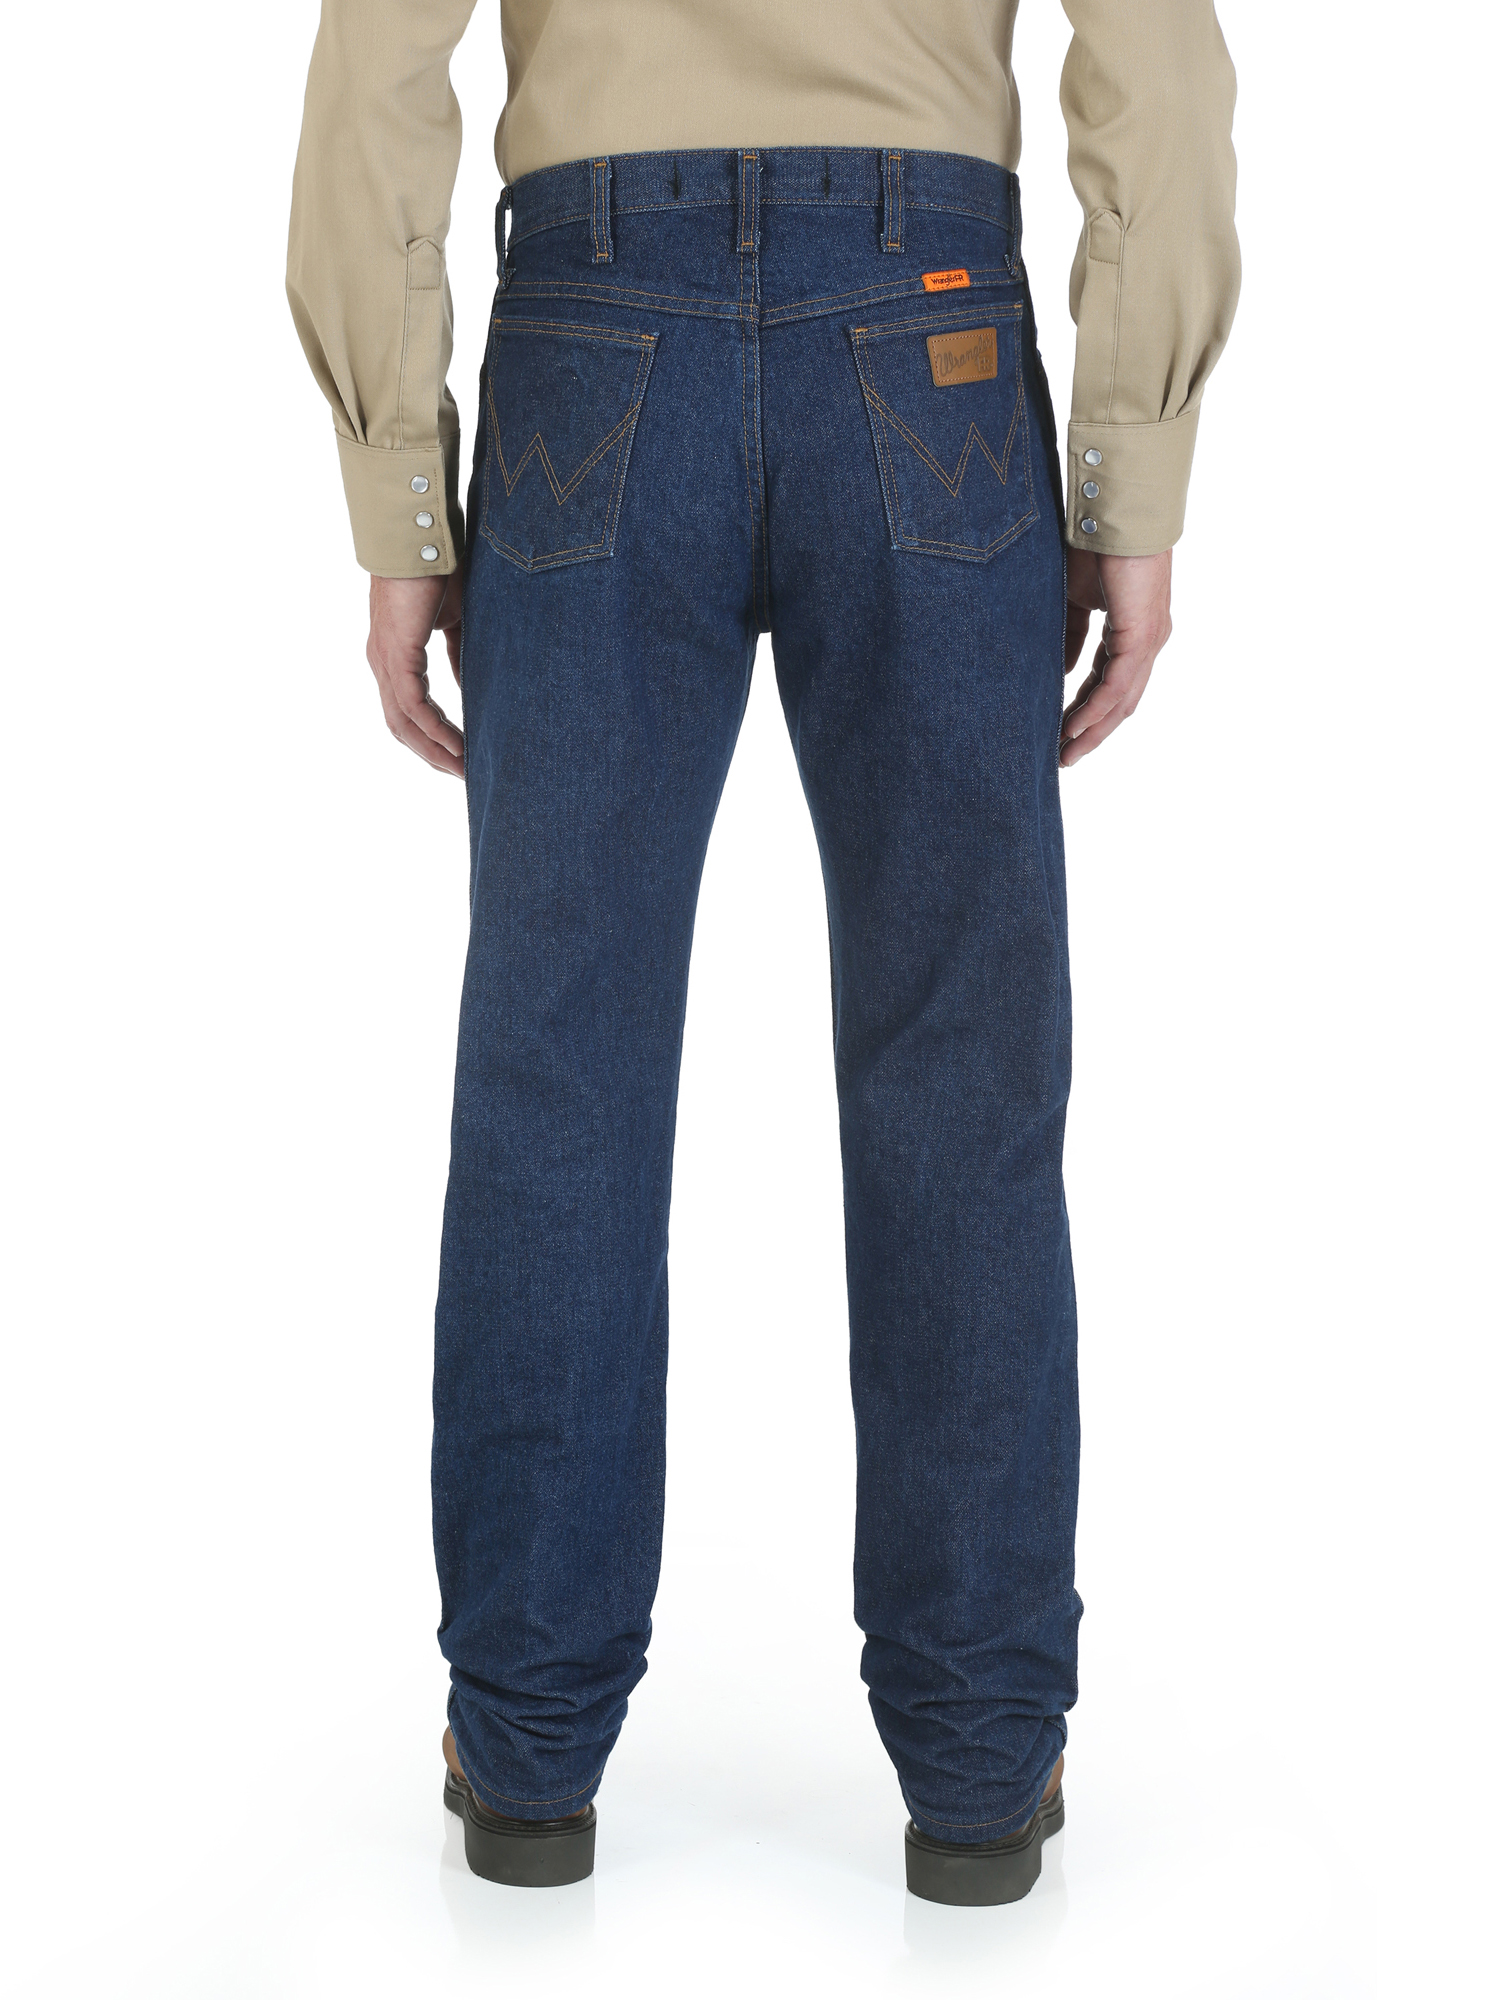 Wrangler Men's Flame Resistant Original Fit Jean - image 3 of 4